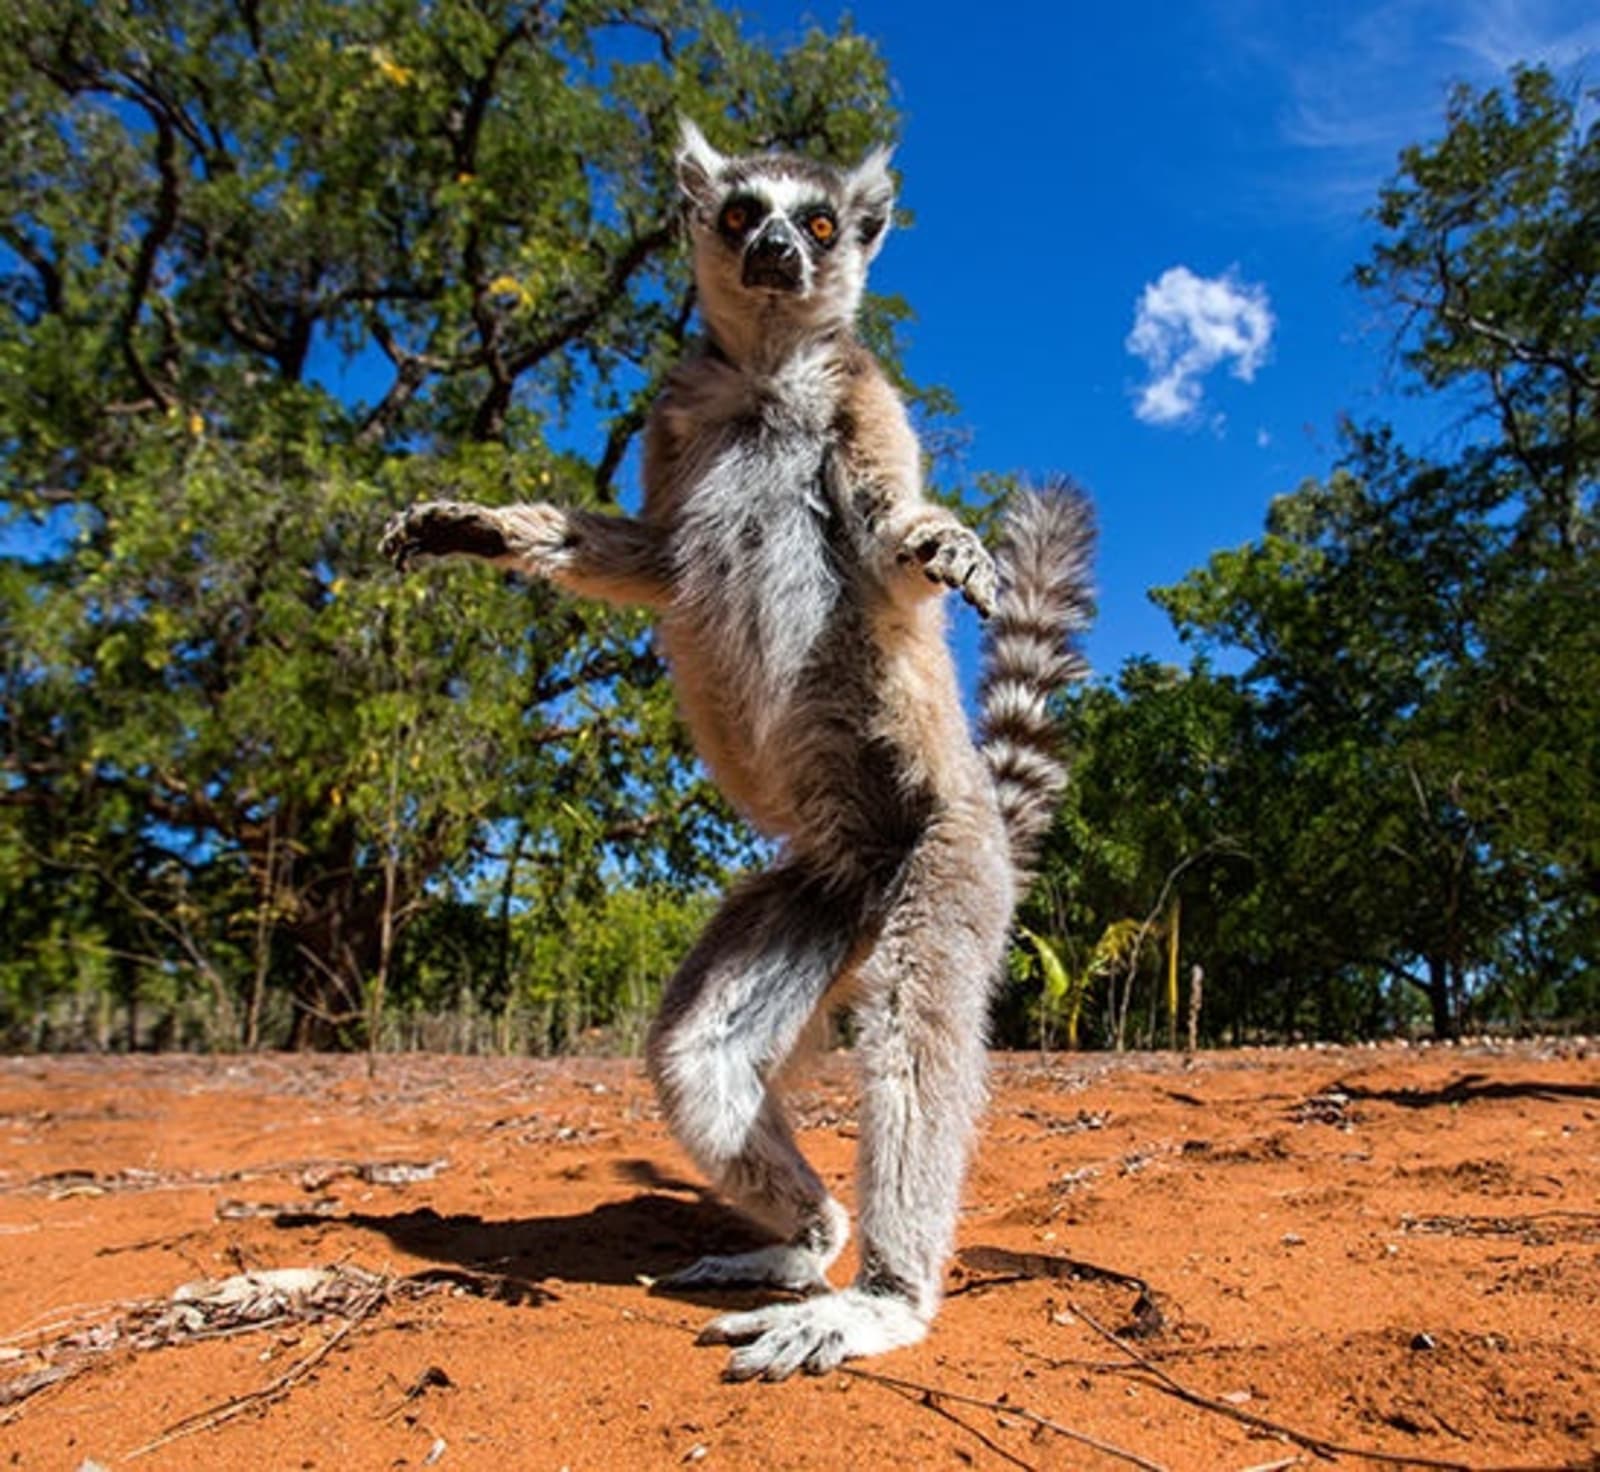 RS-Dancing-lemur-in-Madagascar-shutterstock_256089874.jpg